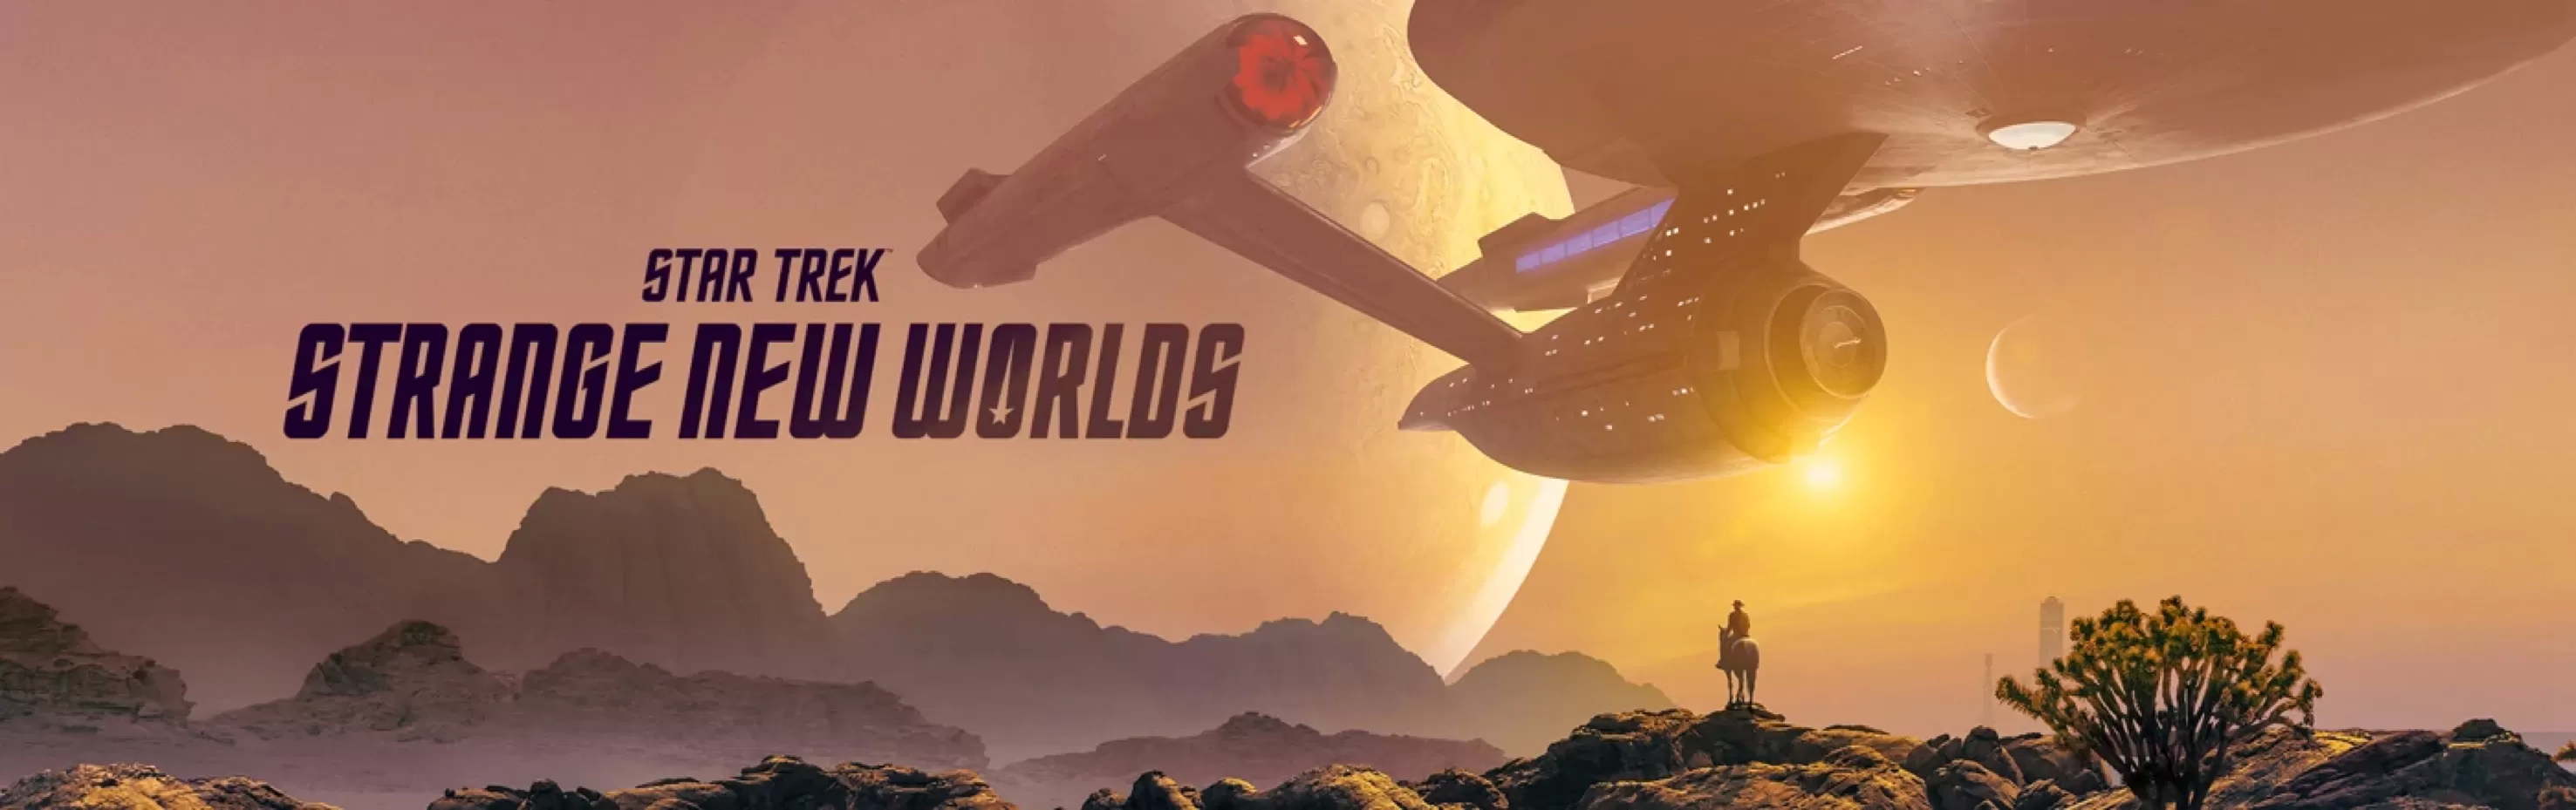 Star Trek: Strange New Worlds: Die zweite Staffel ist bereits in der Produktion und im Herbst soll die deutsche Fassung über die Streamingplattformen veröffentlicht werden.